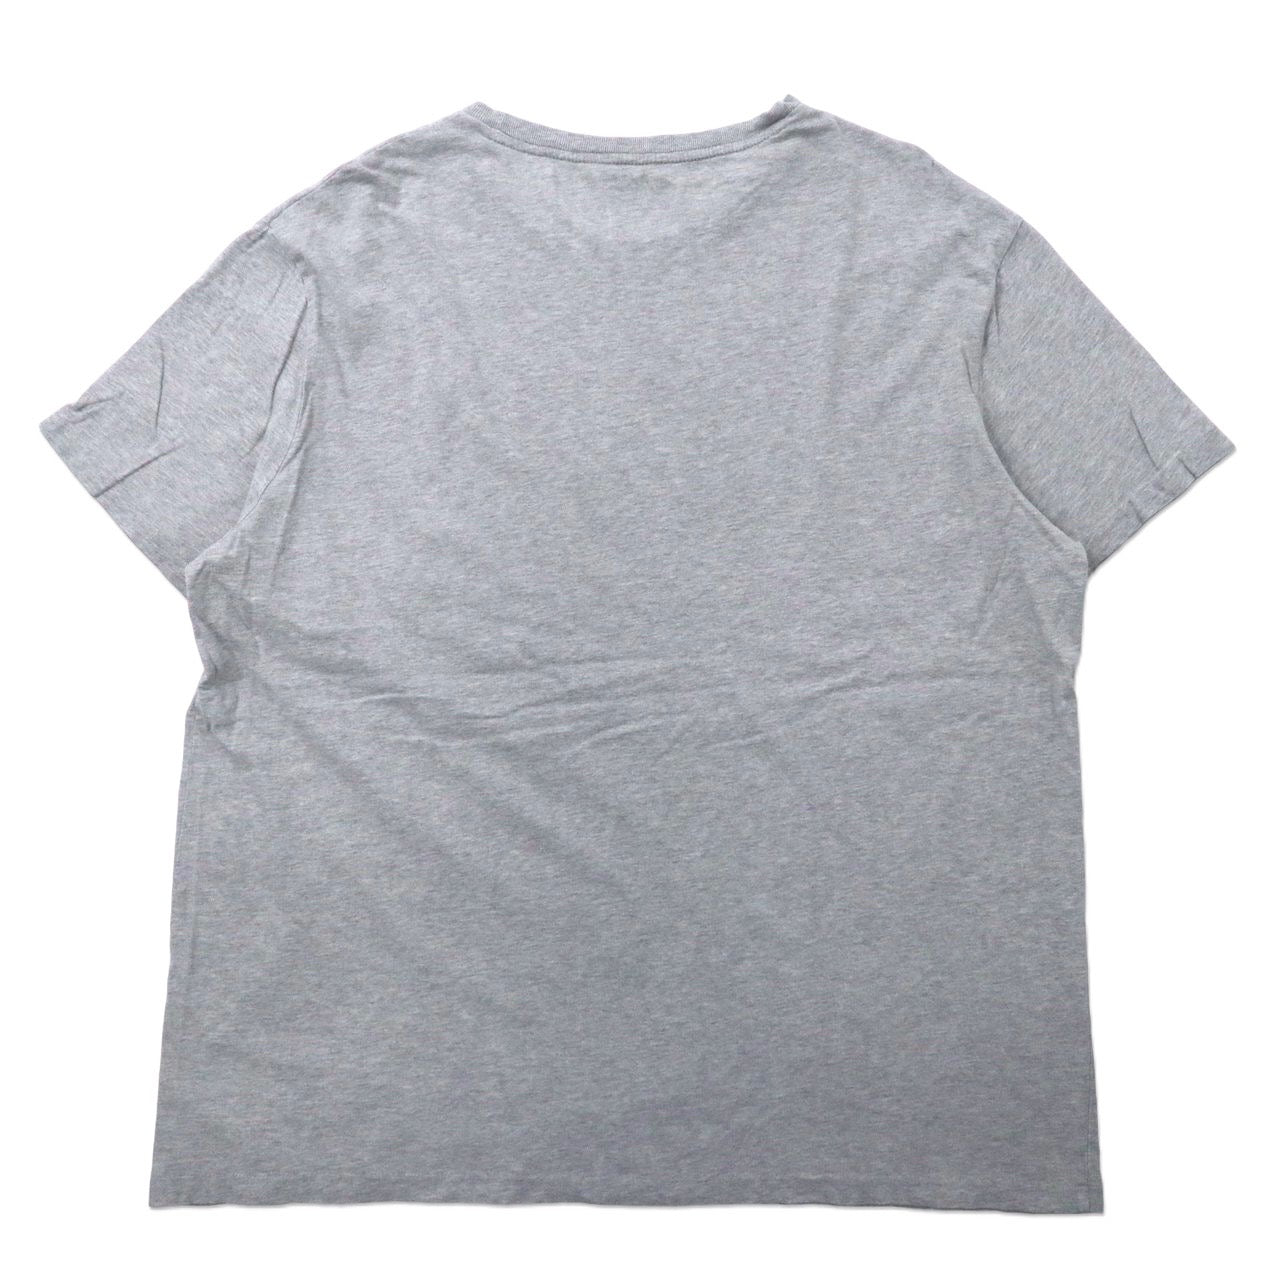 POLO RALPH LAUREN ビッグサイズTシャツ XL グレー コットン スモールポニー刺繍